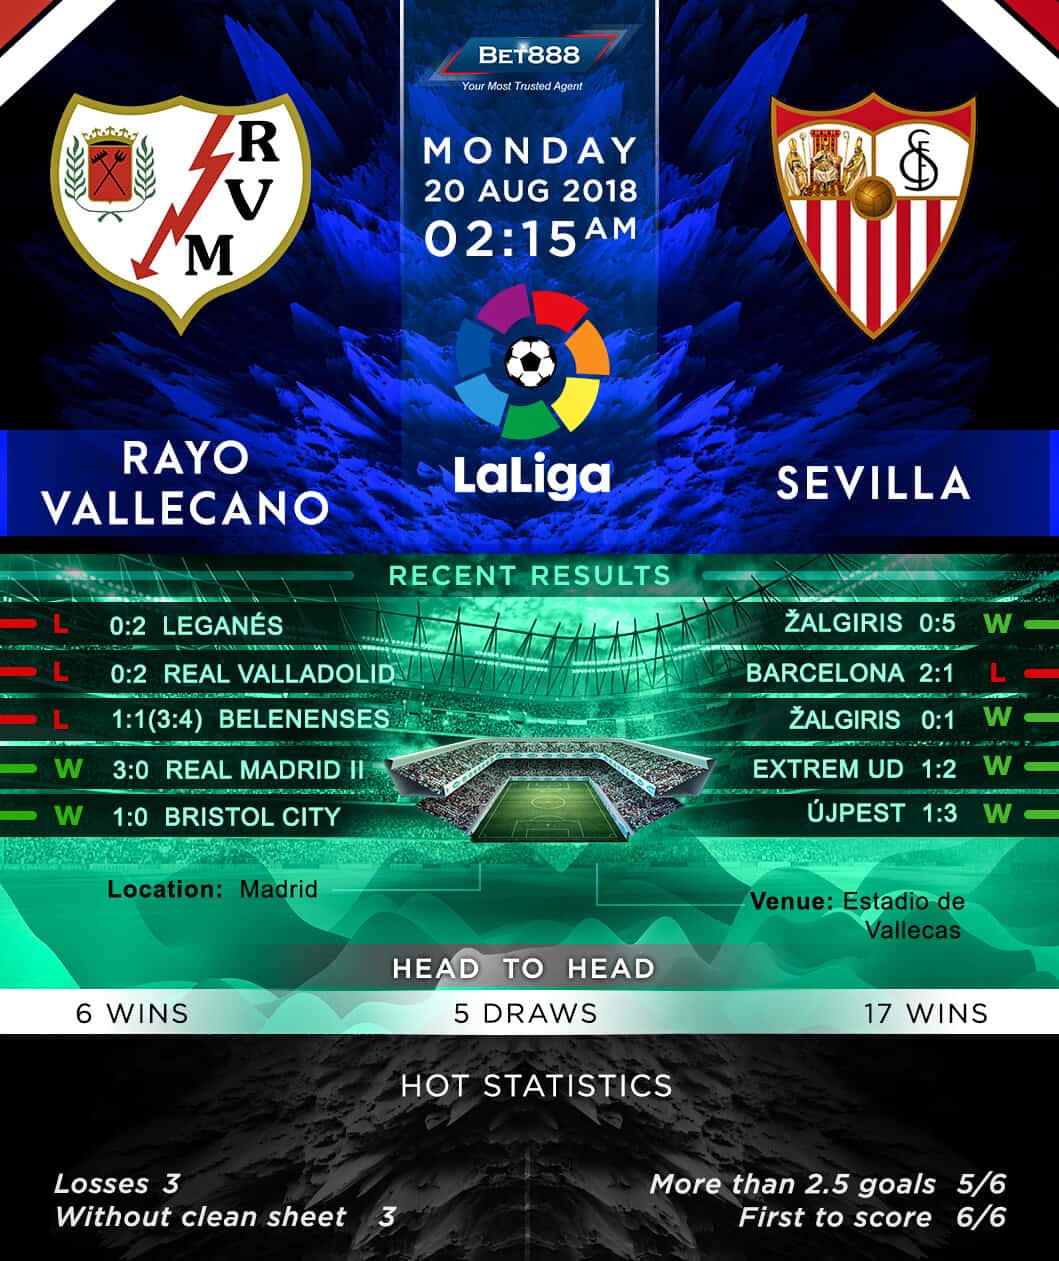 Rayo Vallecano vs Sevilla 20/08/18